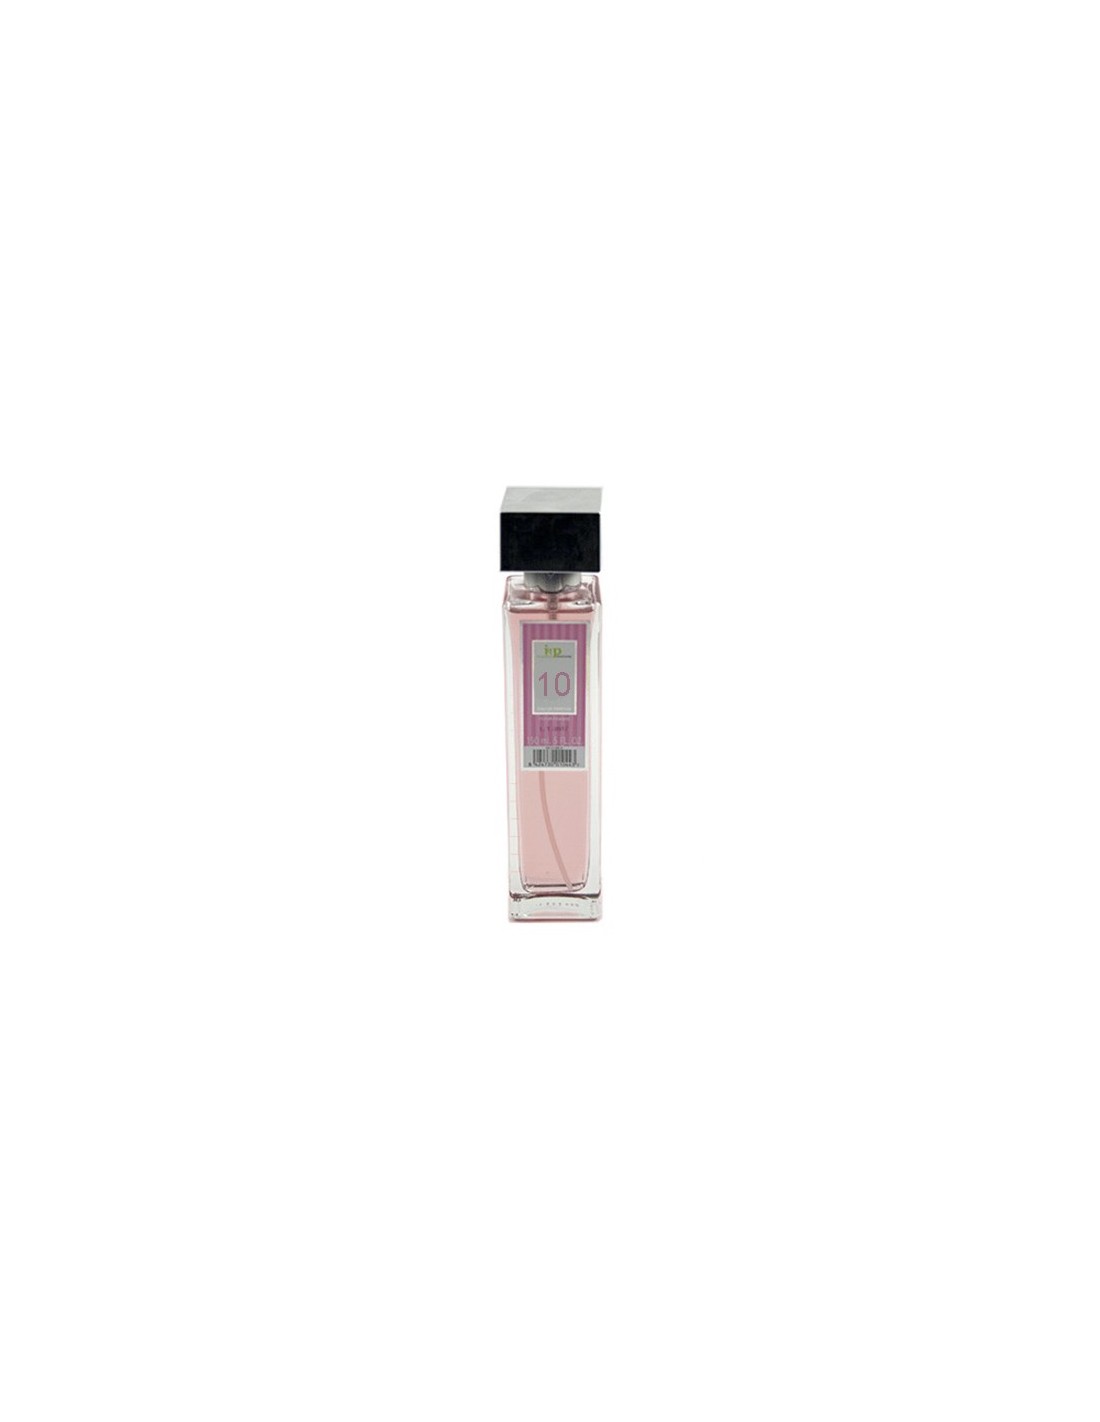 IAP Perfume Mujer N10 150ml